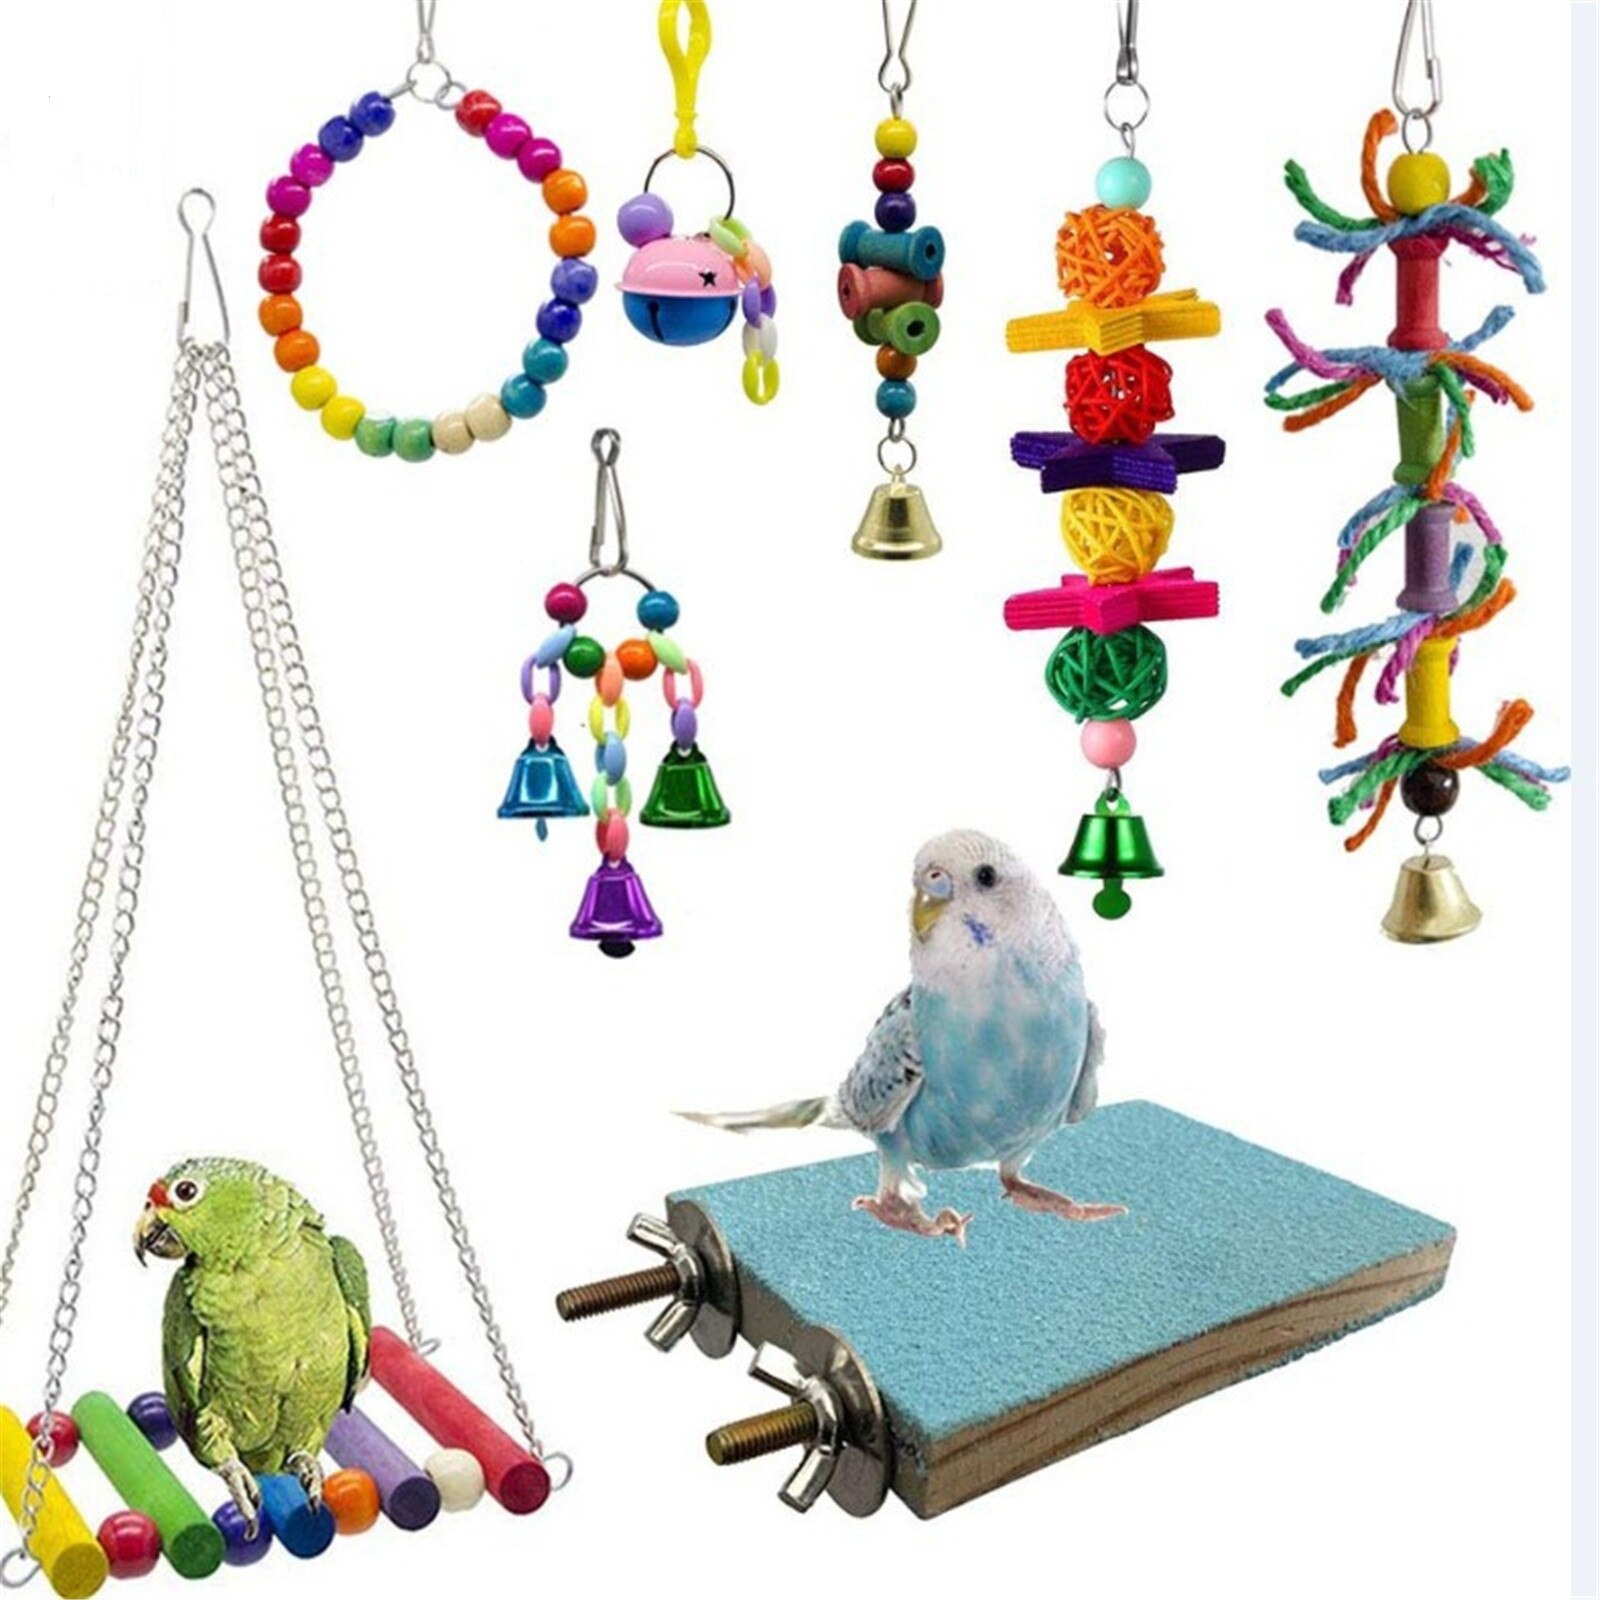 Papegaaien Speelgoed En Vogel Accessoires Voor Huisdier Speelgoed Swing Stand Budgie Parkiet Kooi Afrikaanse Grey Vogel Speelgoed Parkiet Kooi # t2g: B